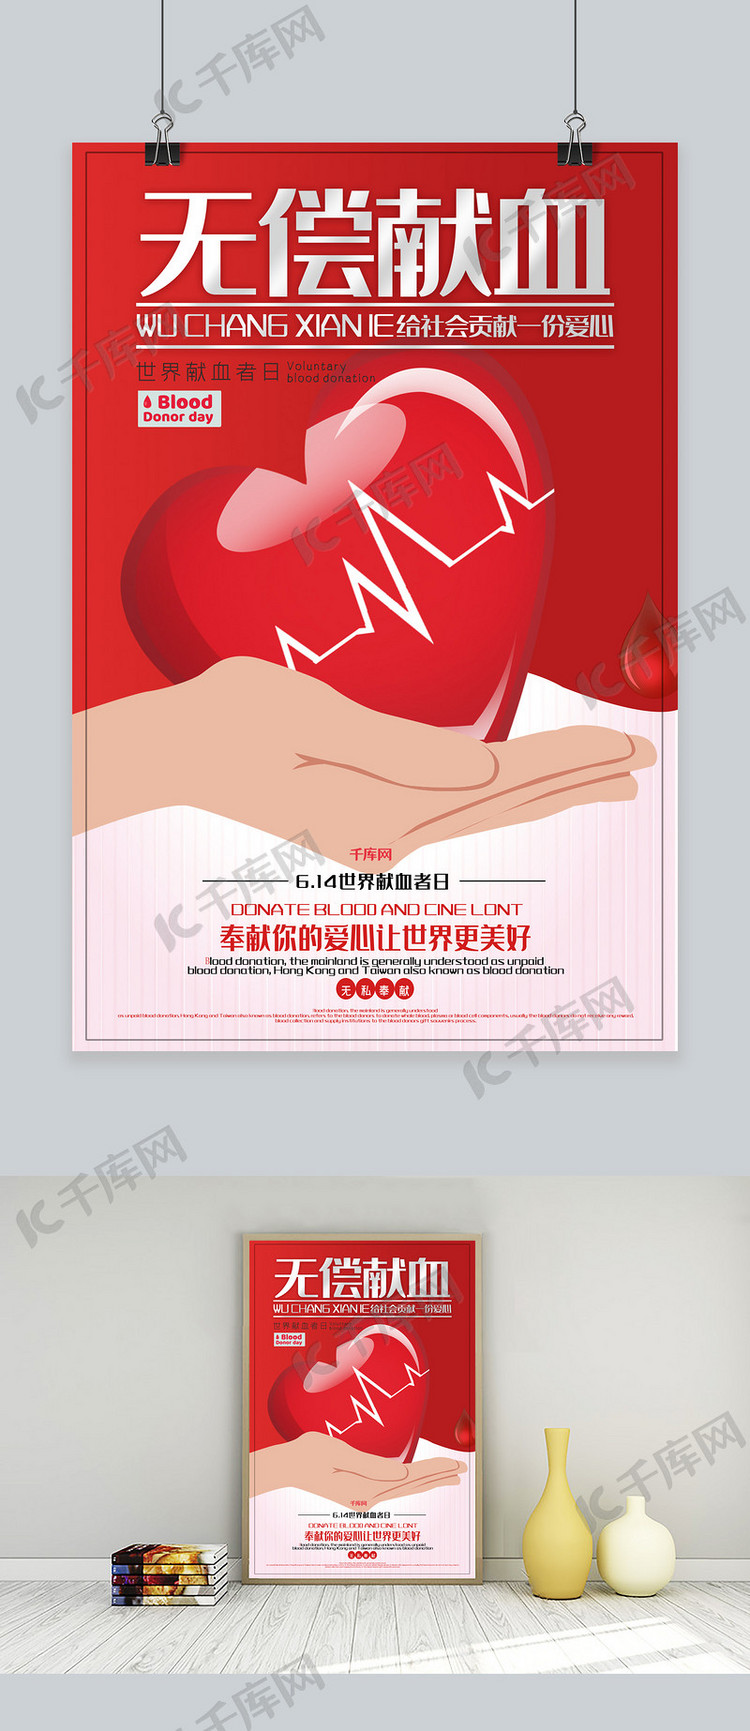 世界献血者日创意合成无偿献血爱心公益奉献海报